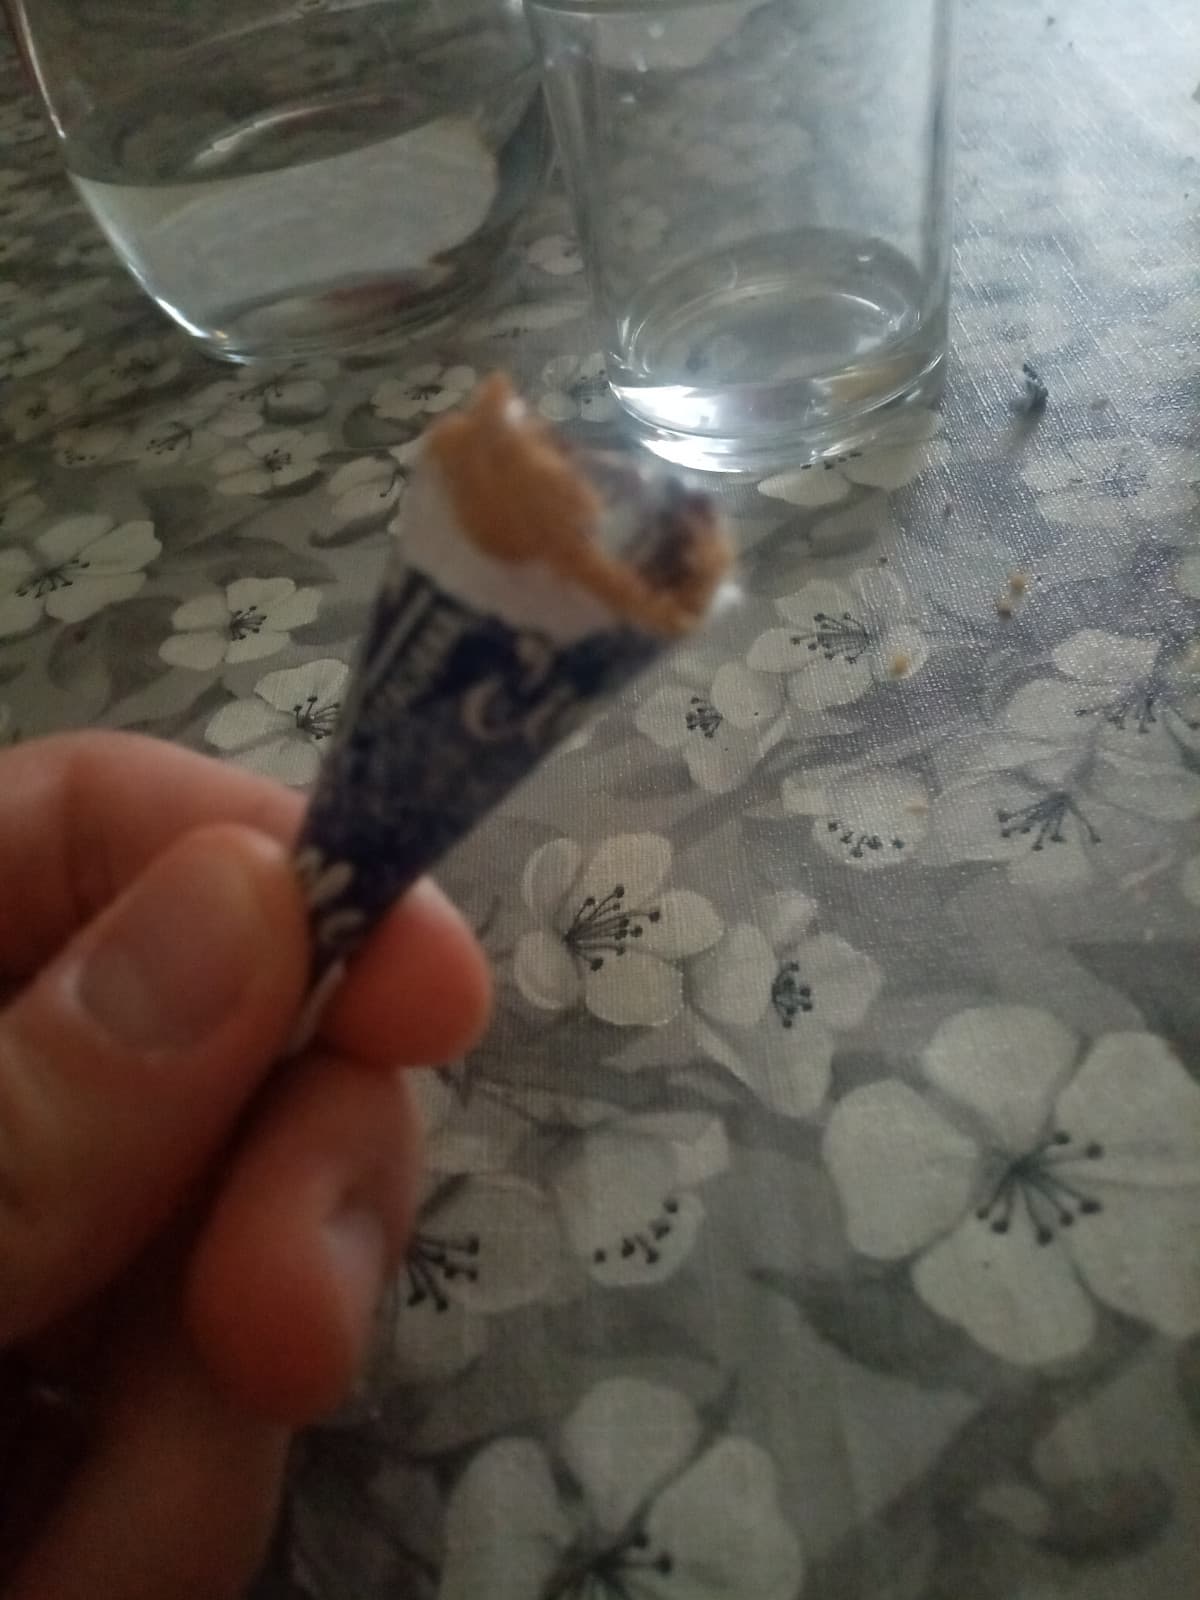 Ho dato un morso e mi sono ritrovato un pezzo della carta del gelato in bocca